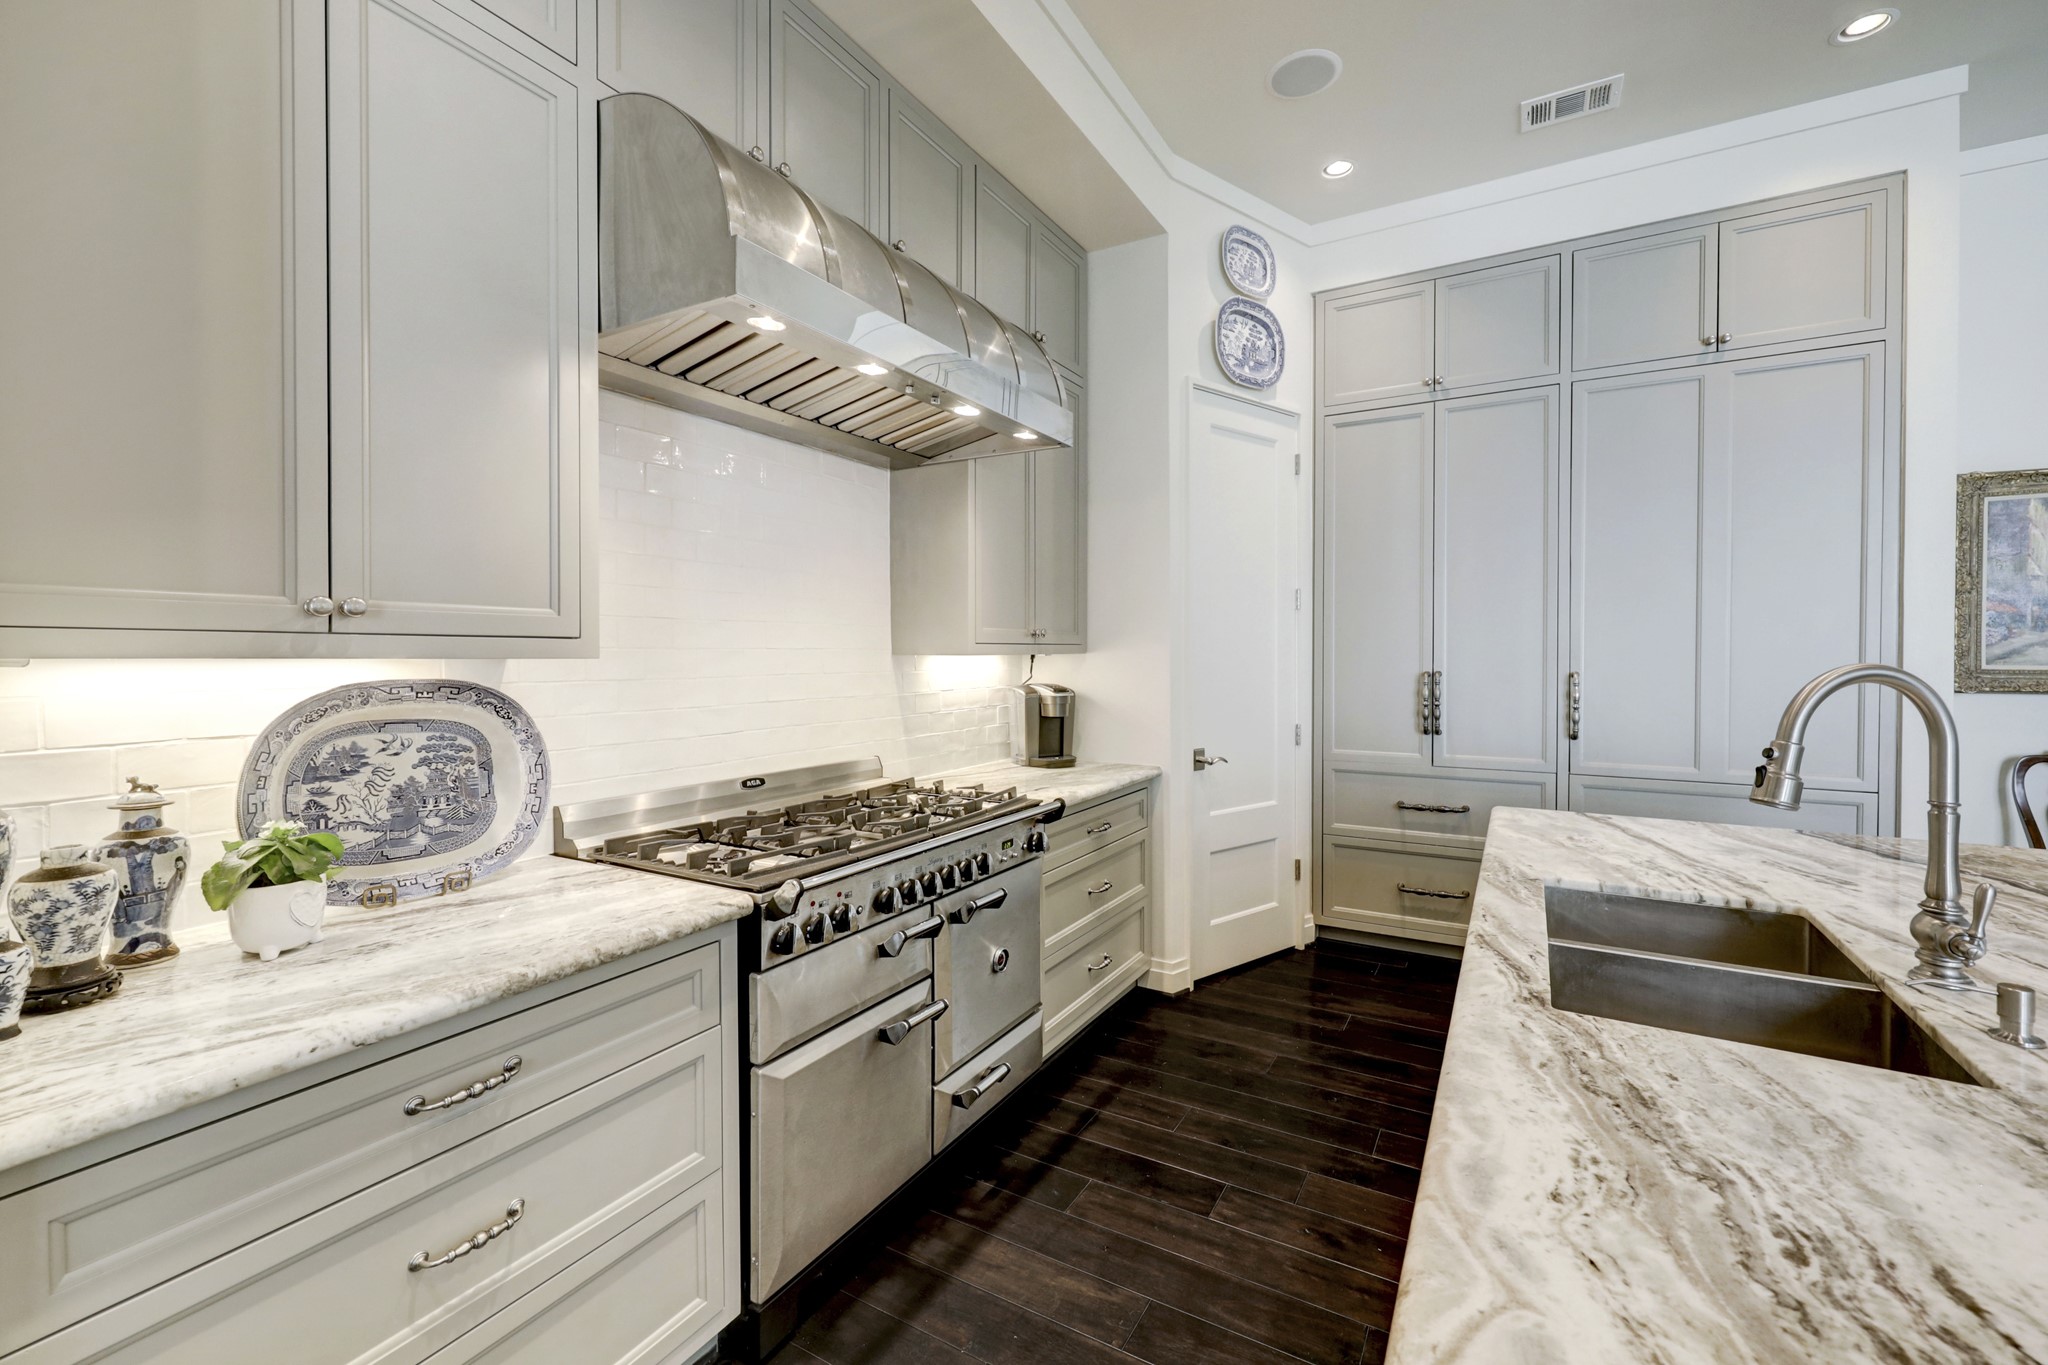 Alternate Kitchen view, cabinet front Sub Zero, upper/lower refrigerator and freezer.